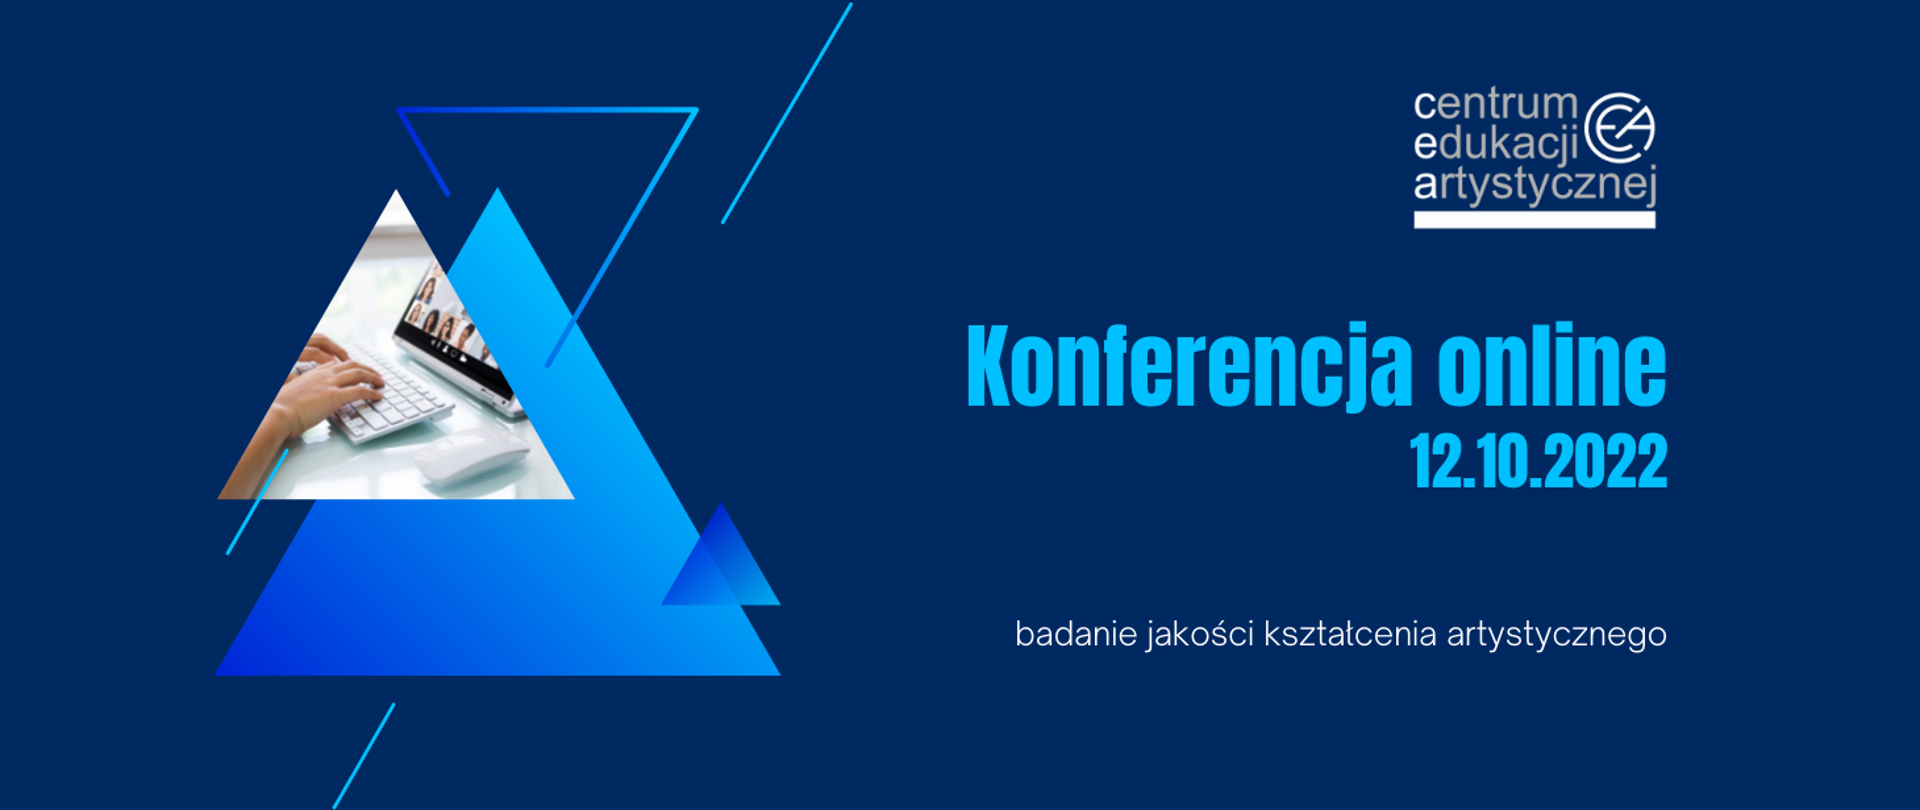 Niebieska grafika z ikonografią trójkątów po stronie lewej, logo CEA w prawym górnym rogu i tekstem "Konferencja online 12.10.2022 - badanie jakości kształcenia artystycznego"